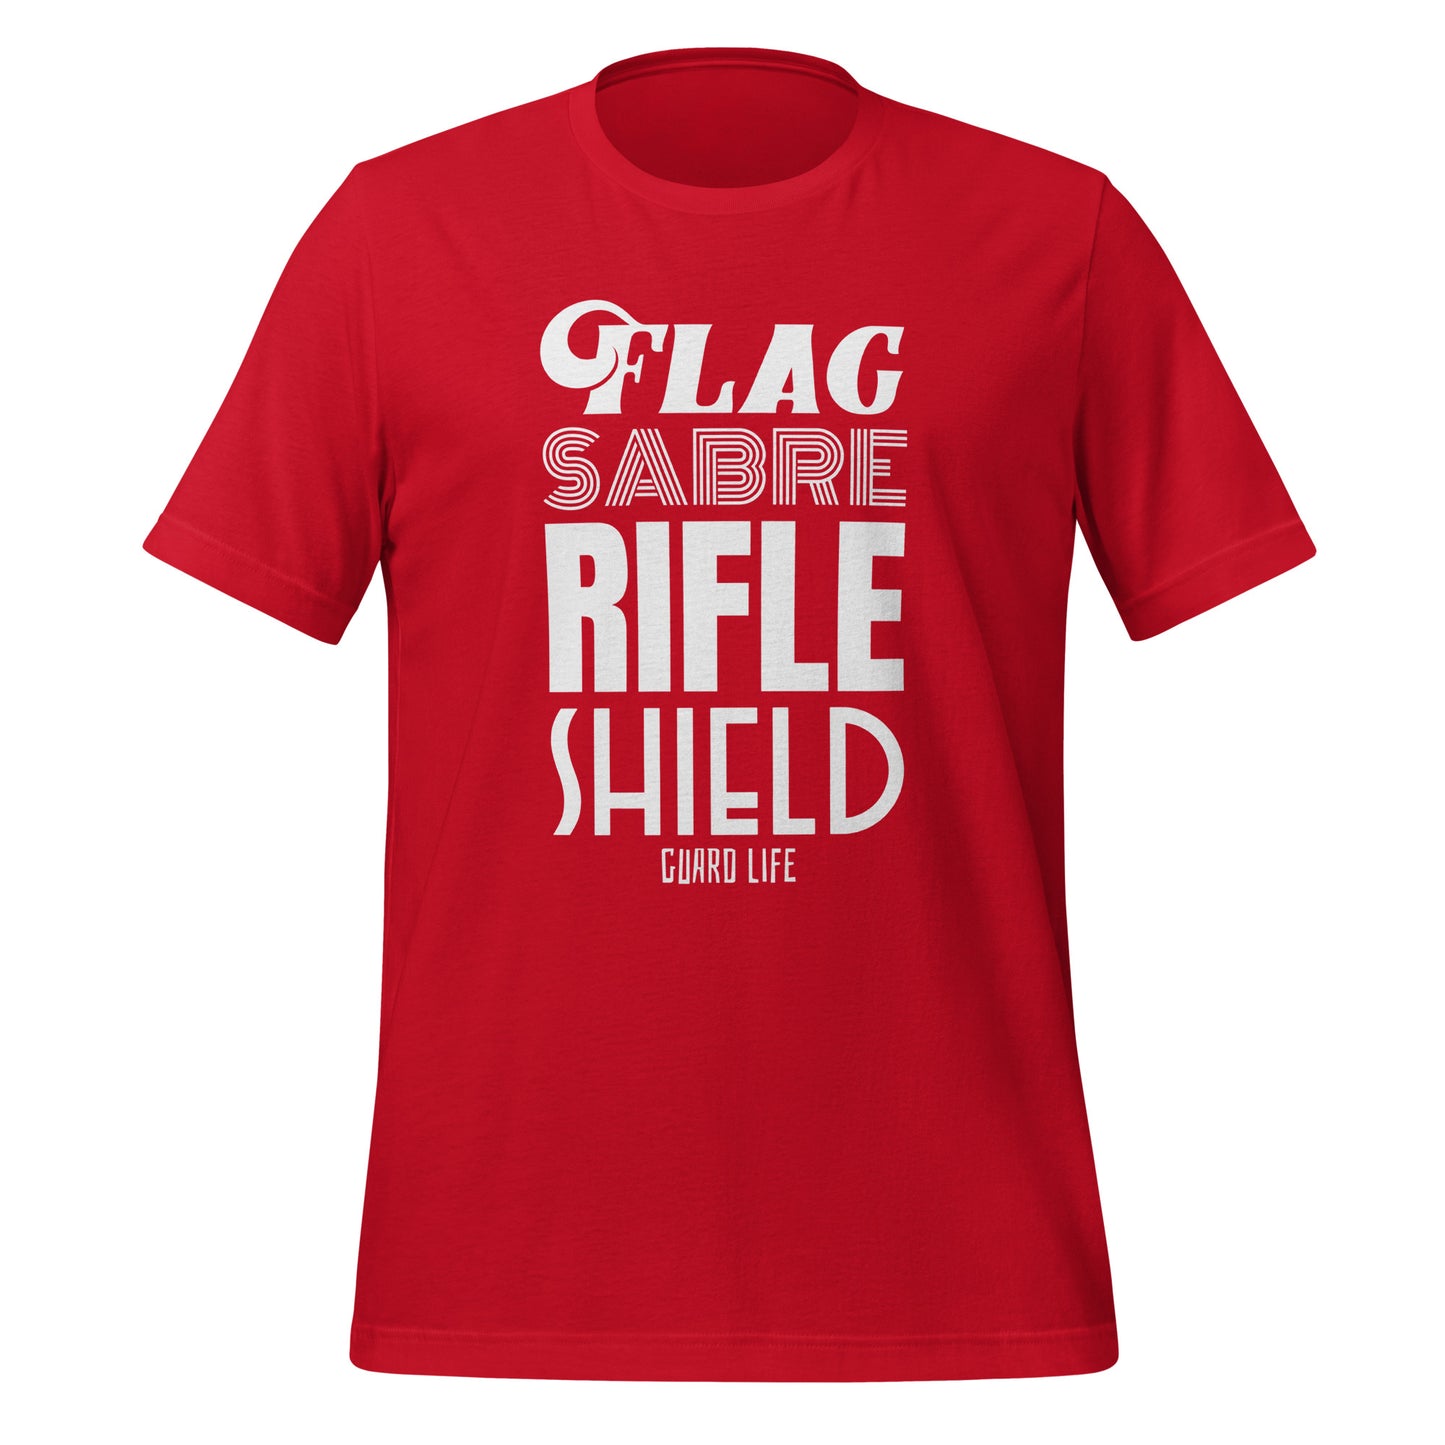 FLAG, SABER, RIFLE, SHIELD (Color Guard) unisex t-shirt